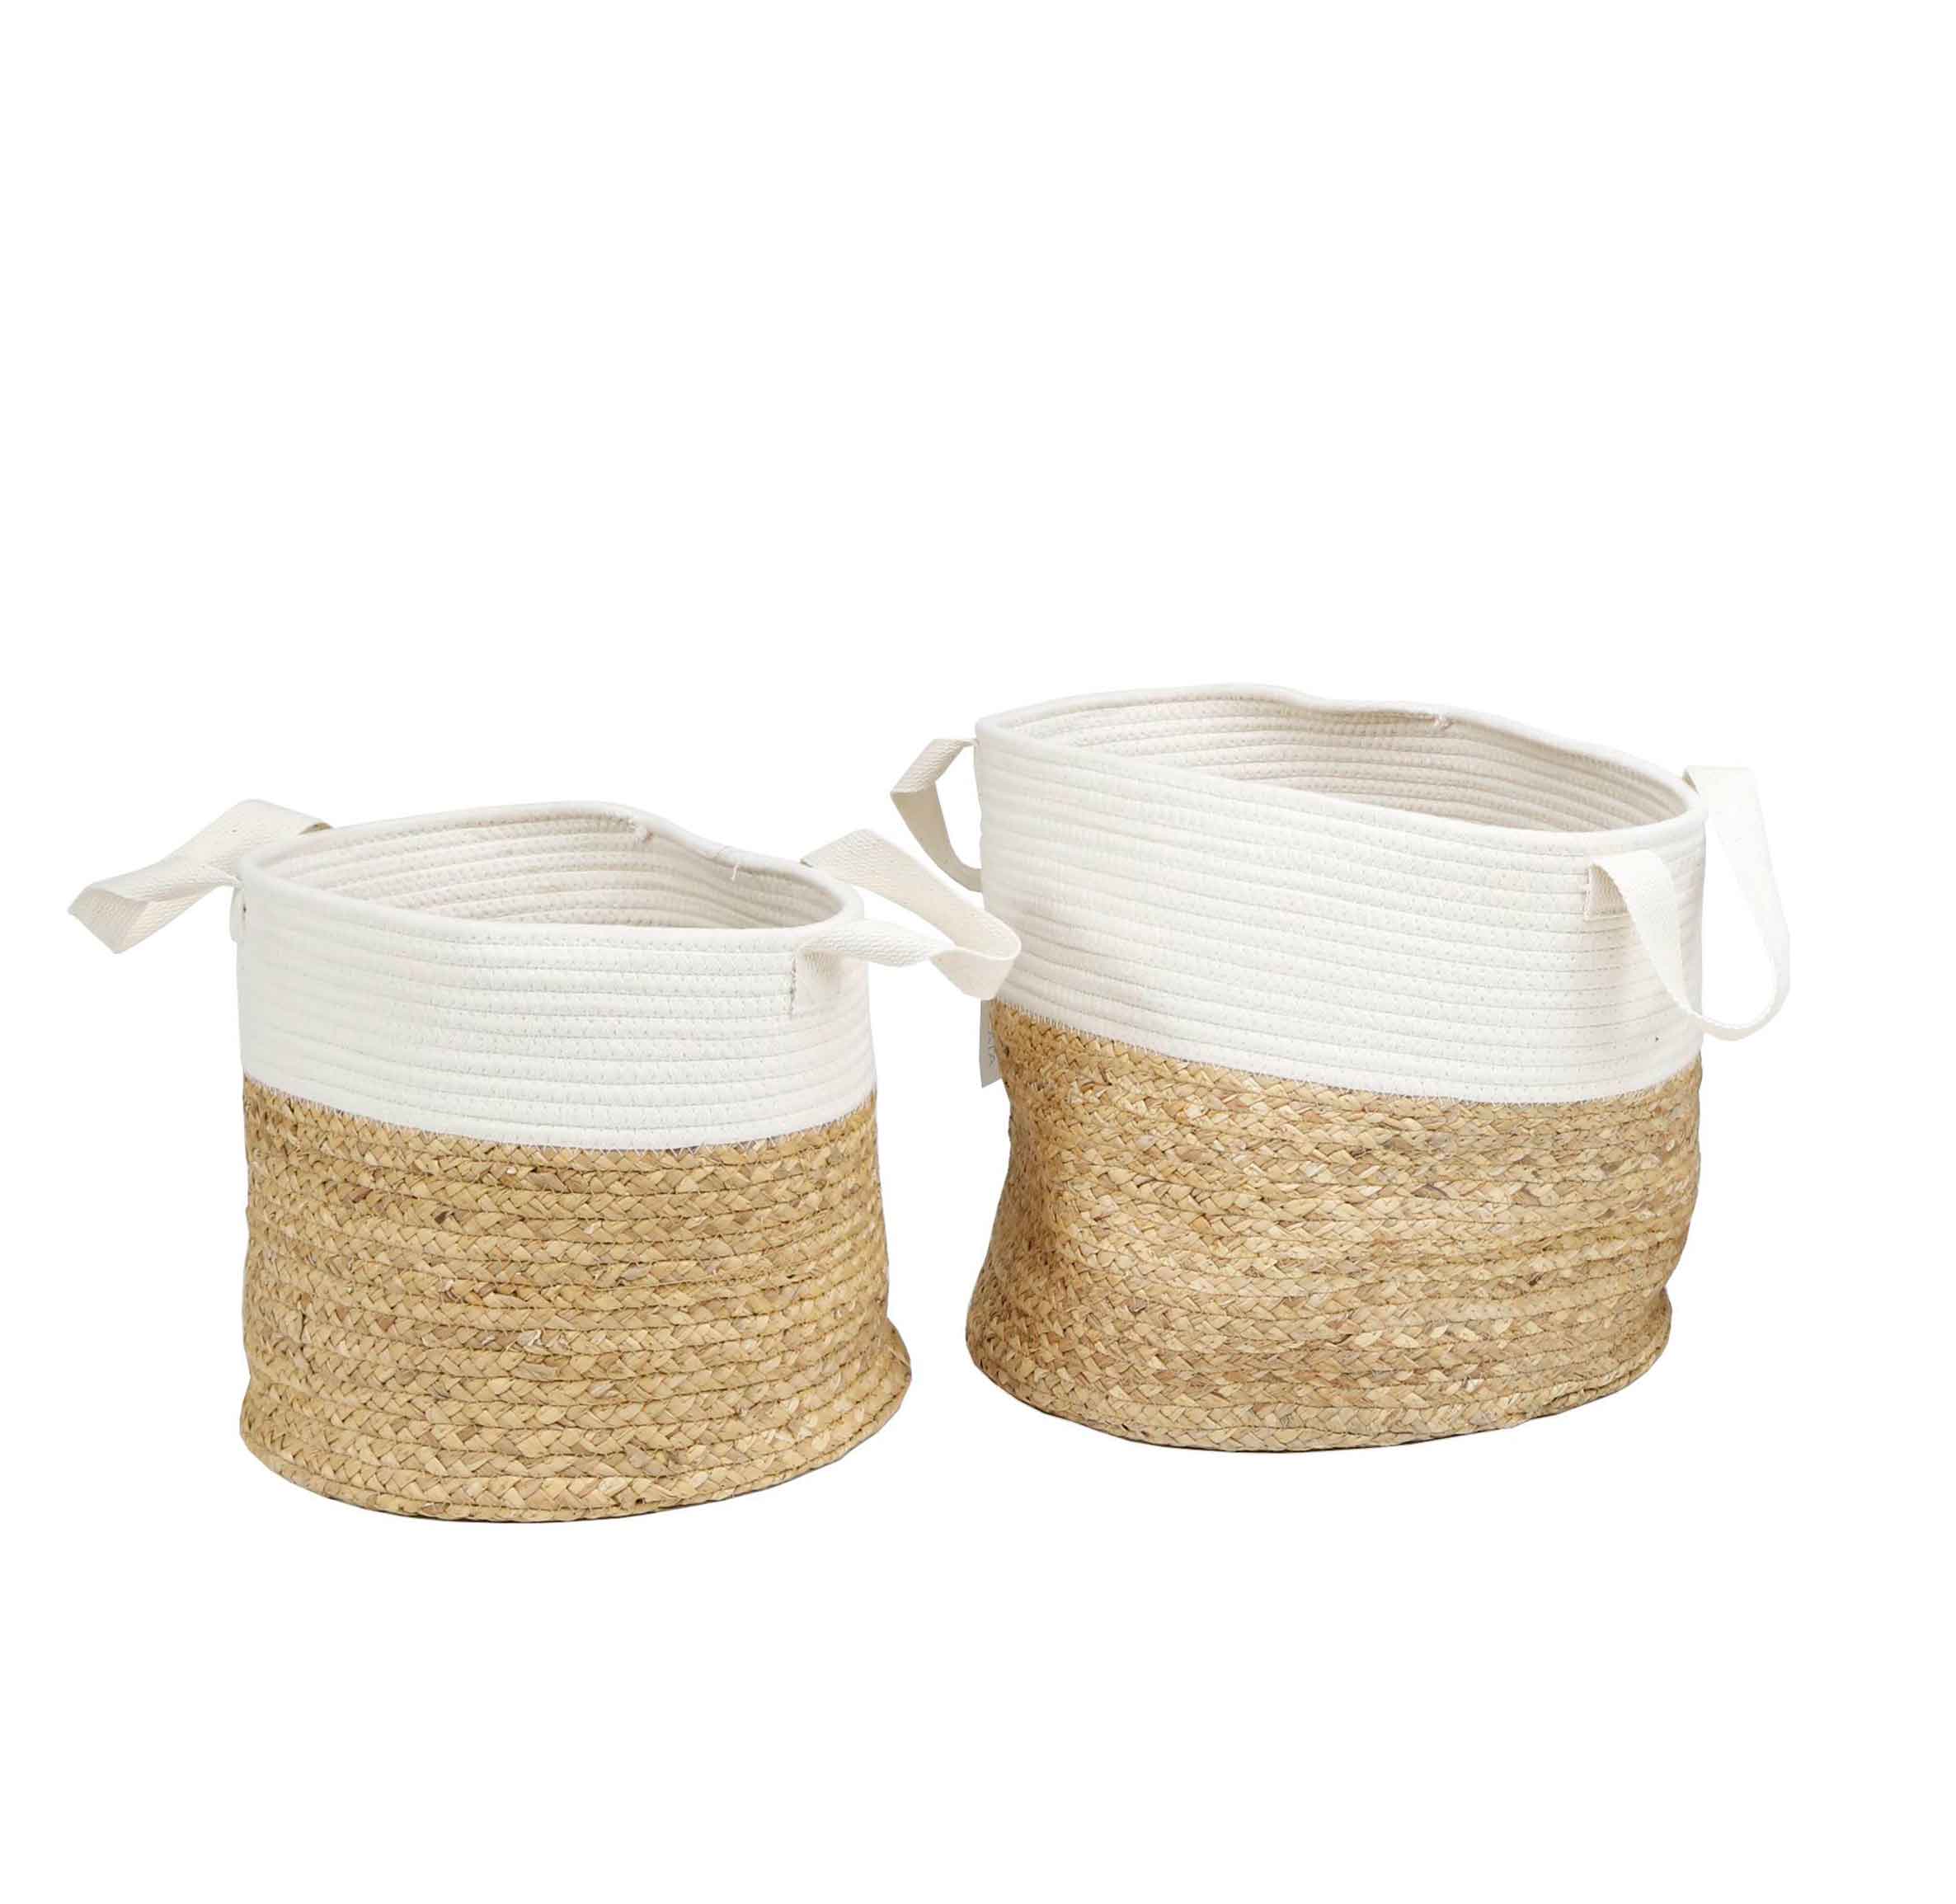 Bonito y práctico set de dos cestas de mimbre de color blanco.